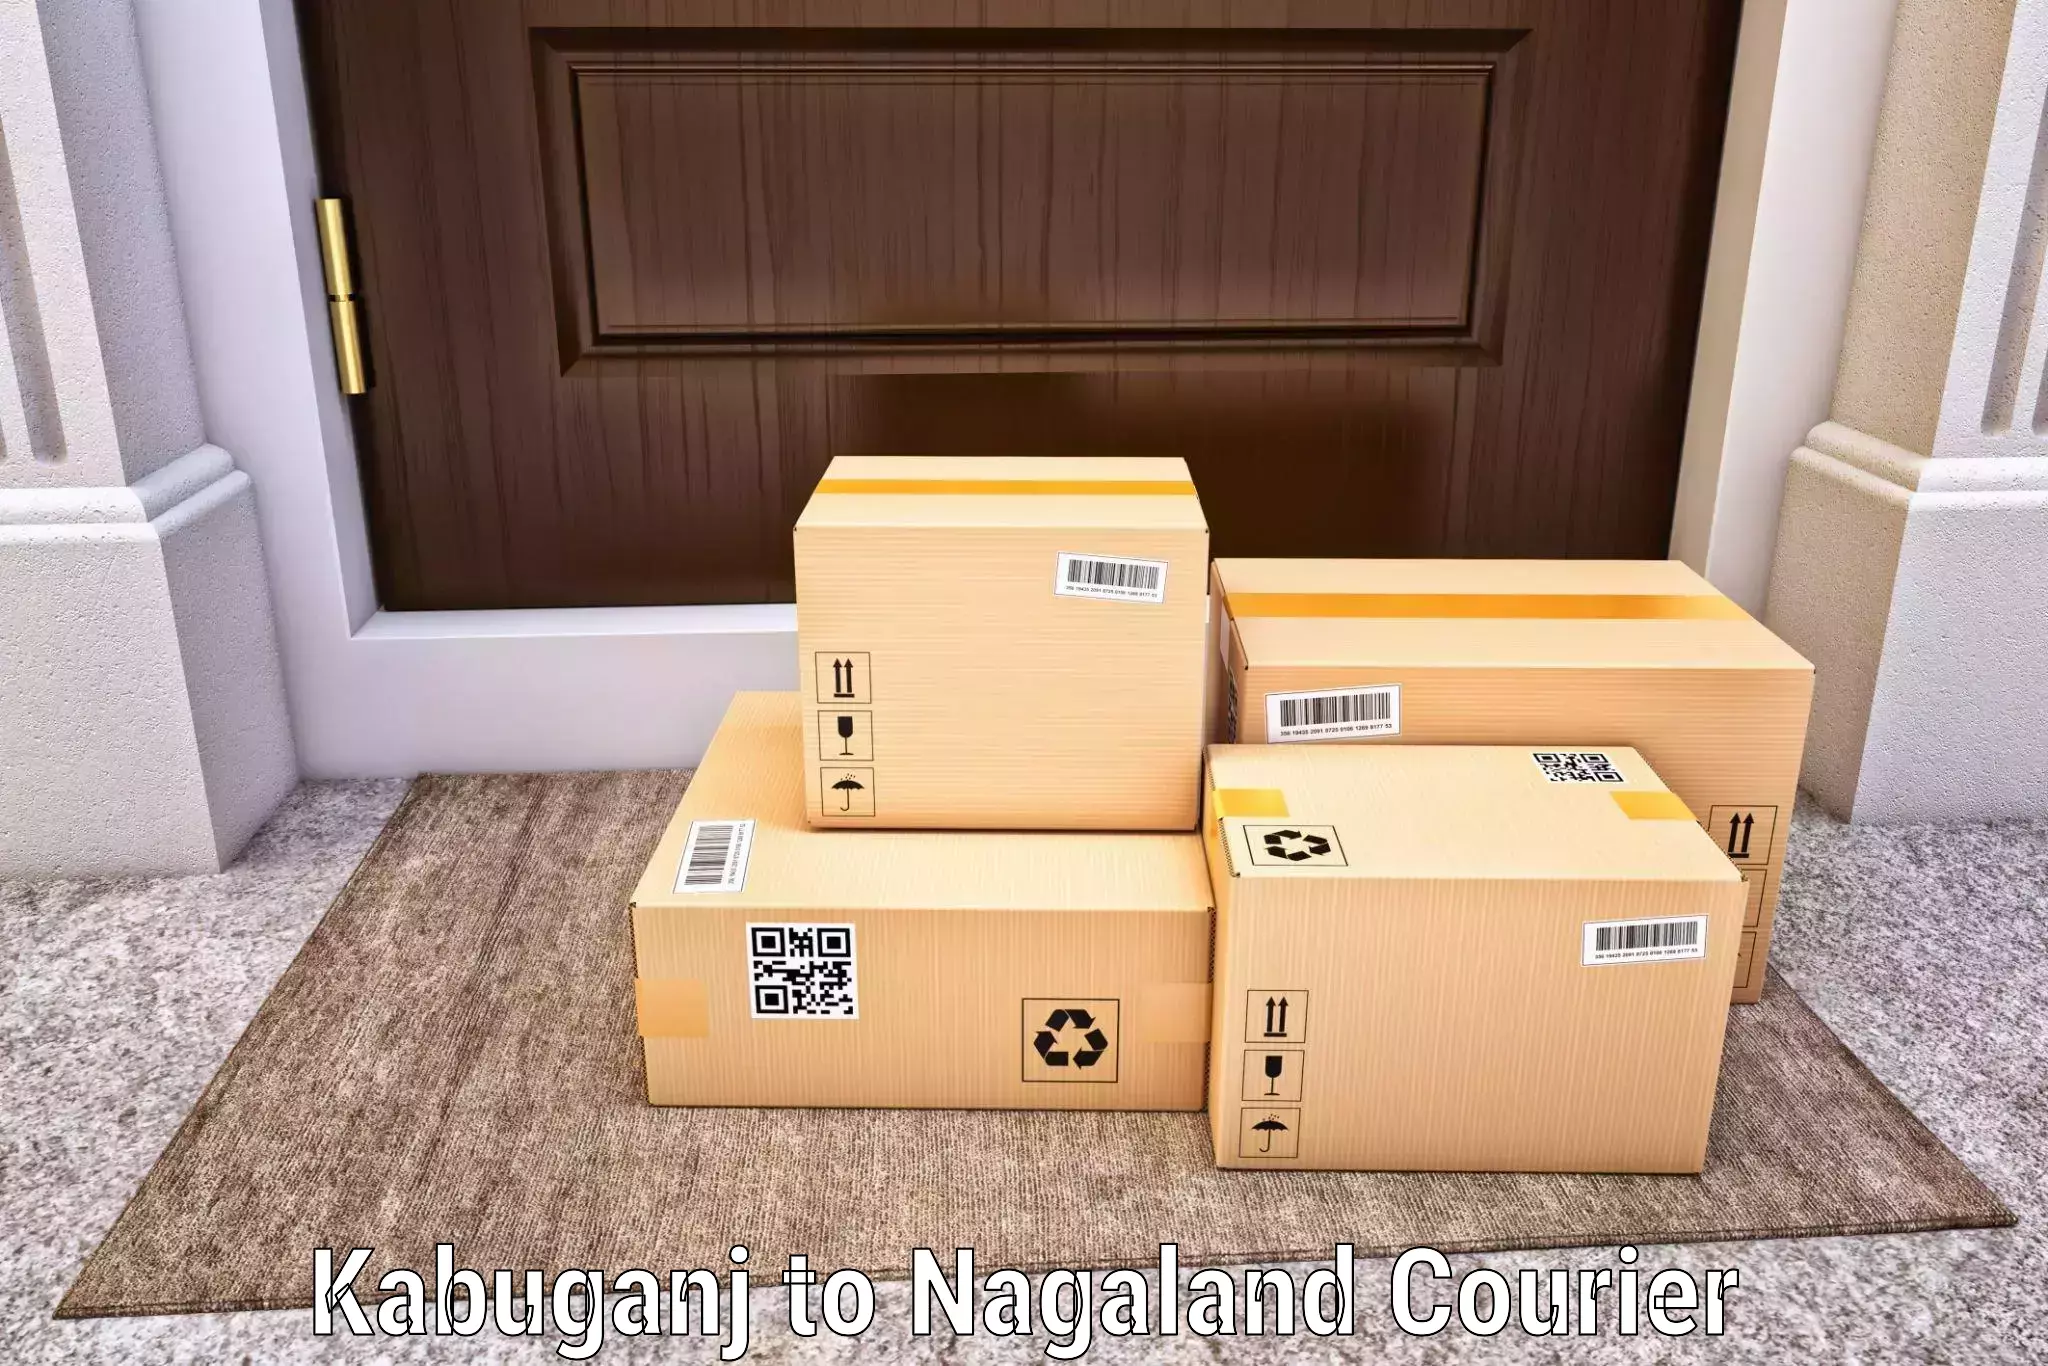 24-hour delivery options Kabuganj to Chumukedima